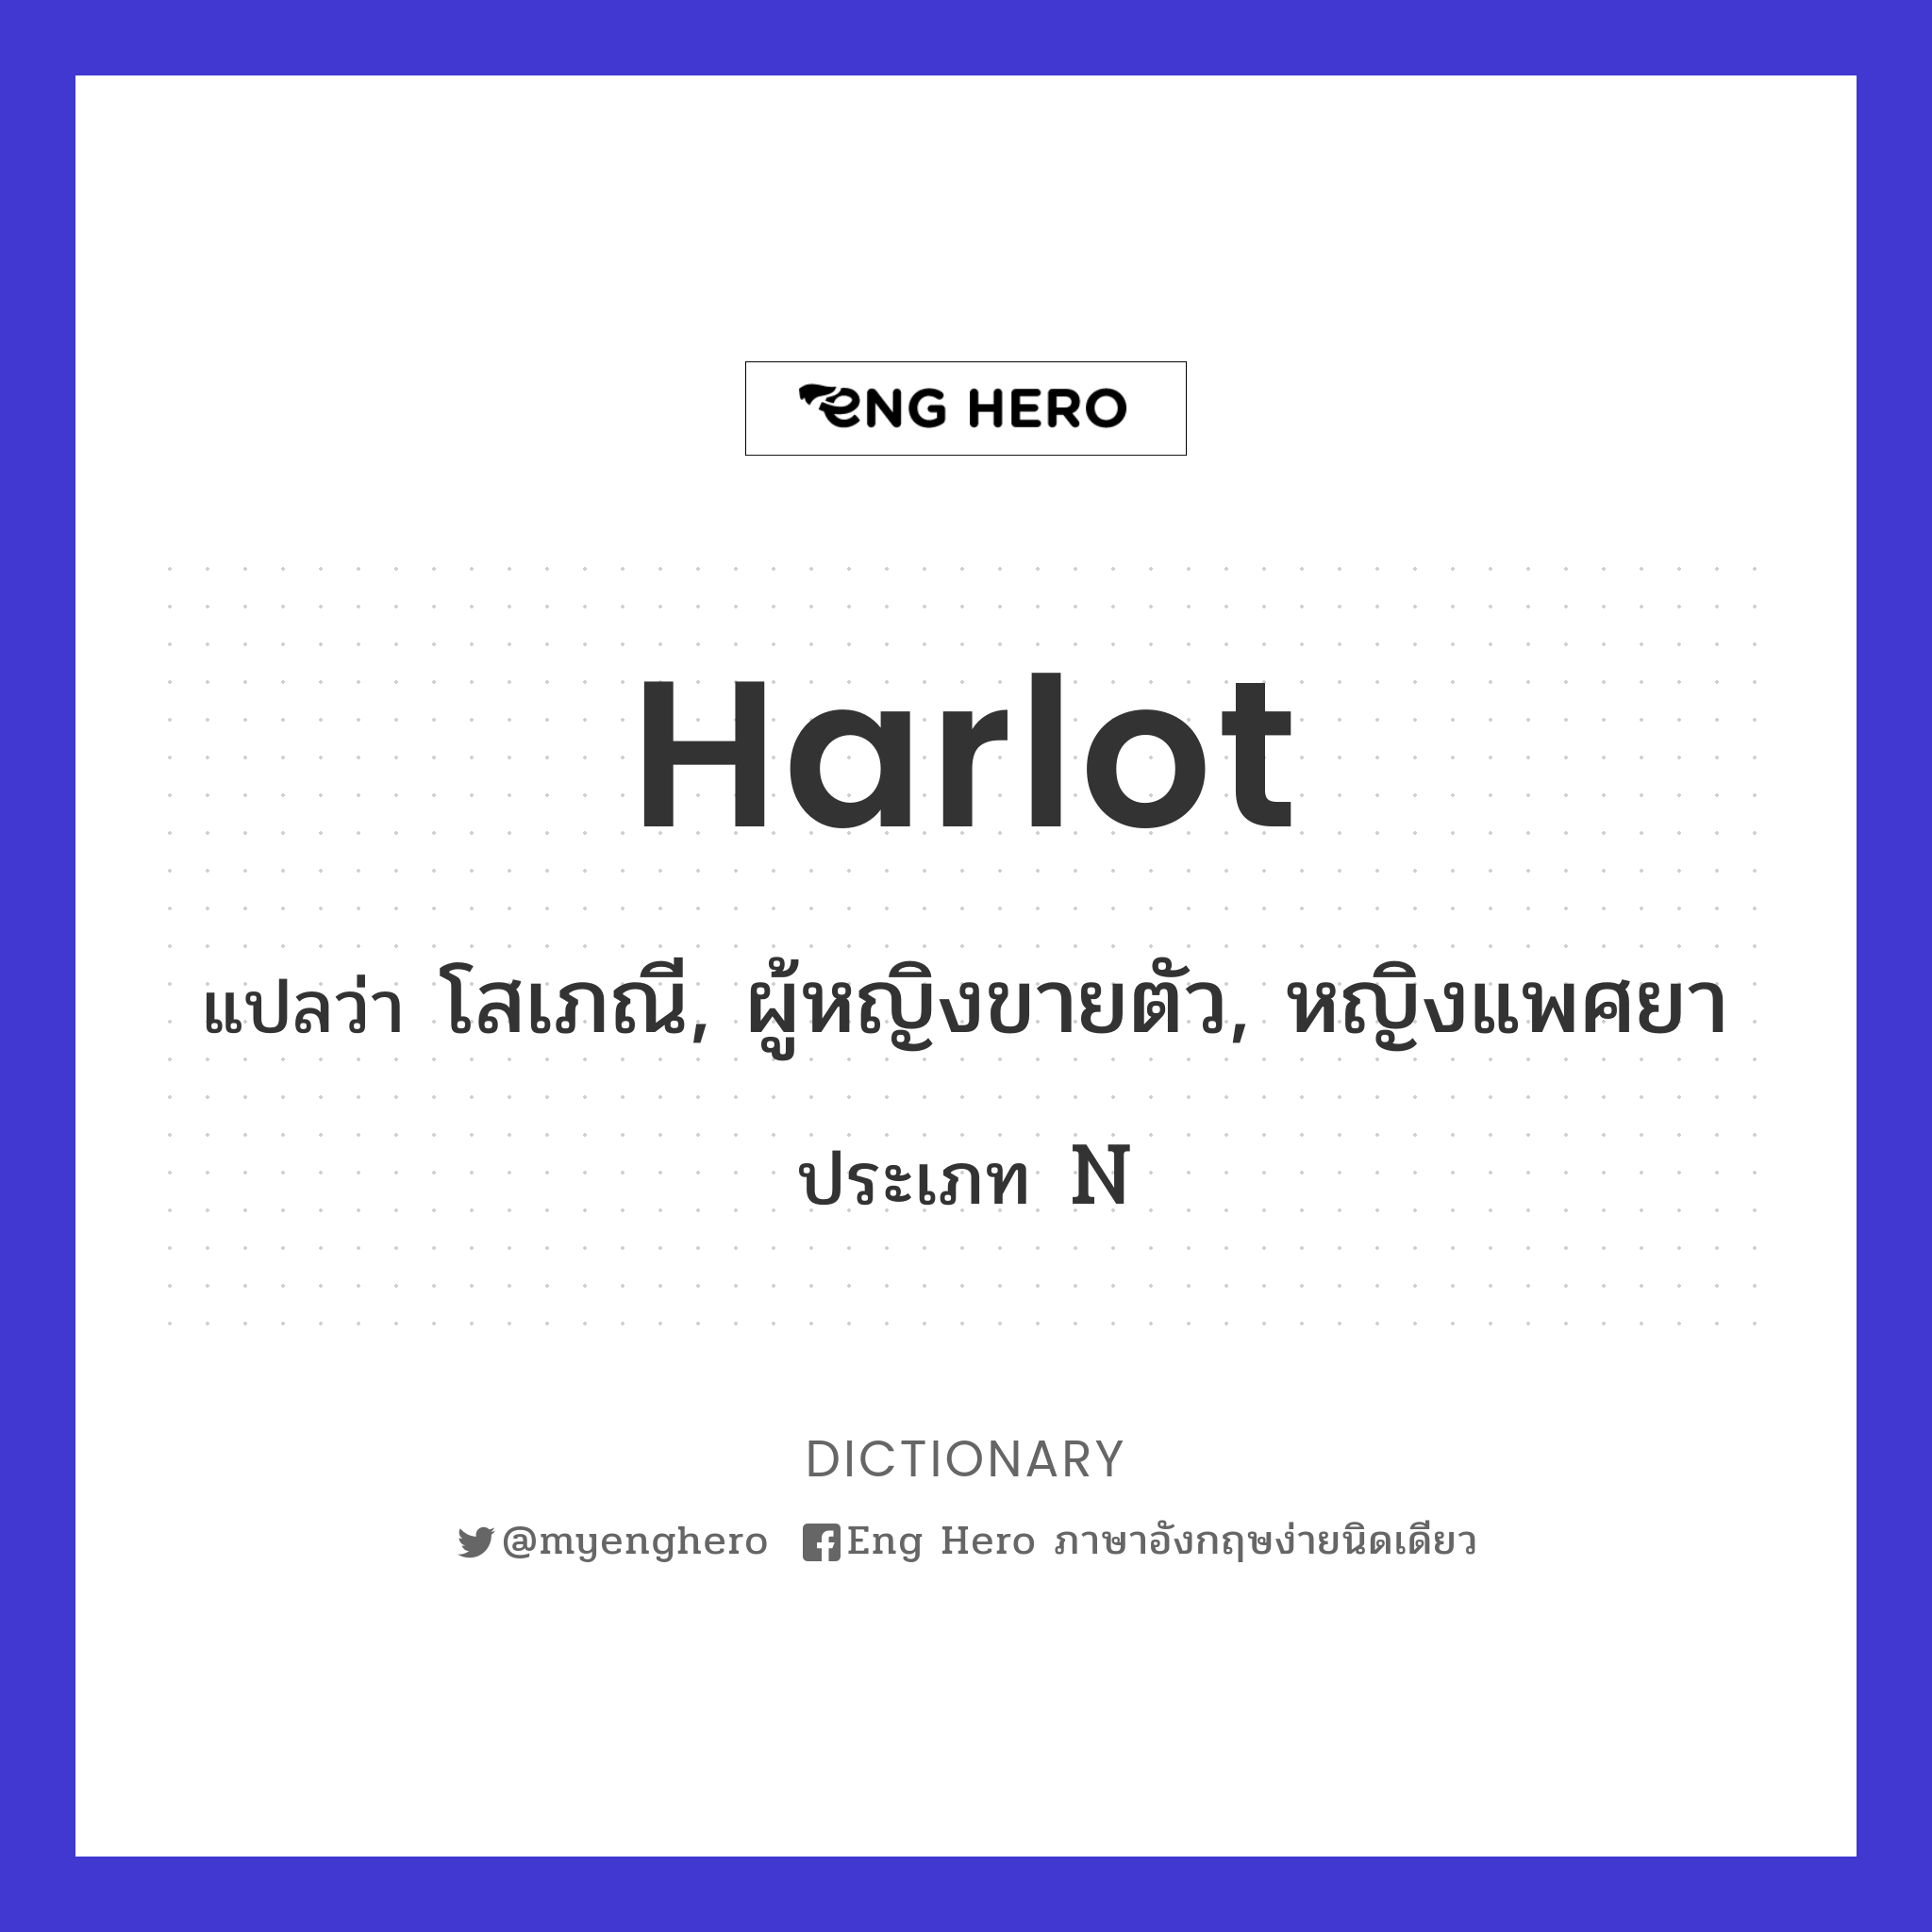 harlot